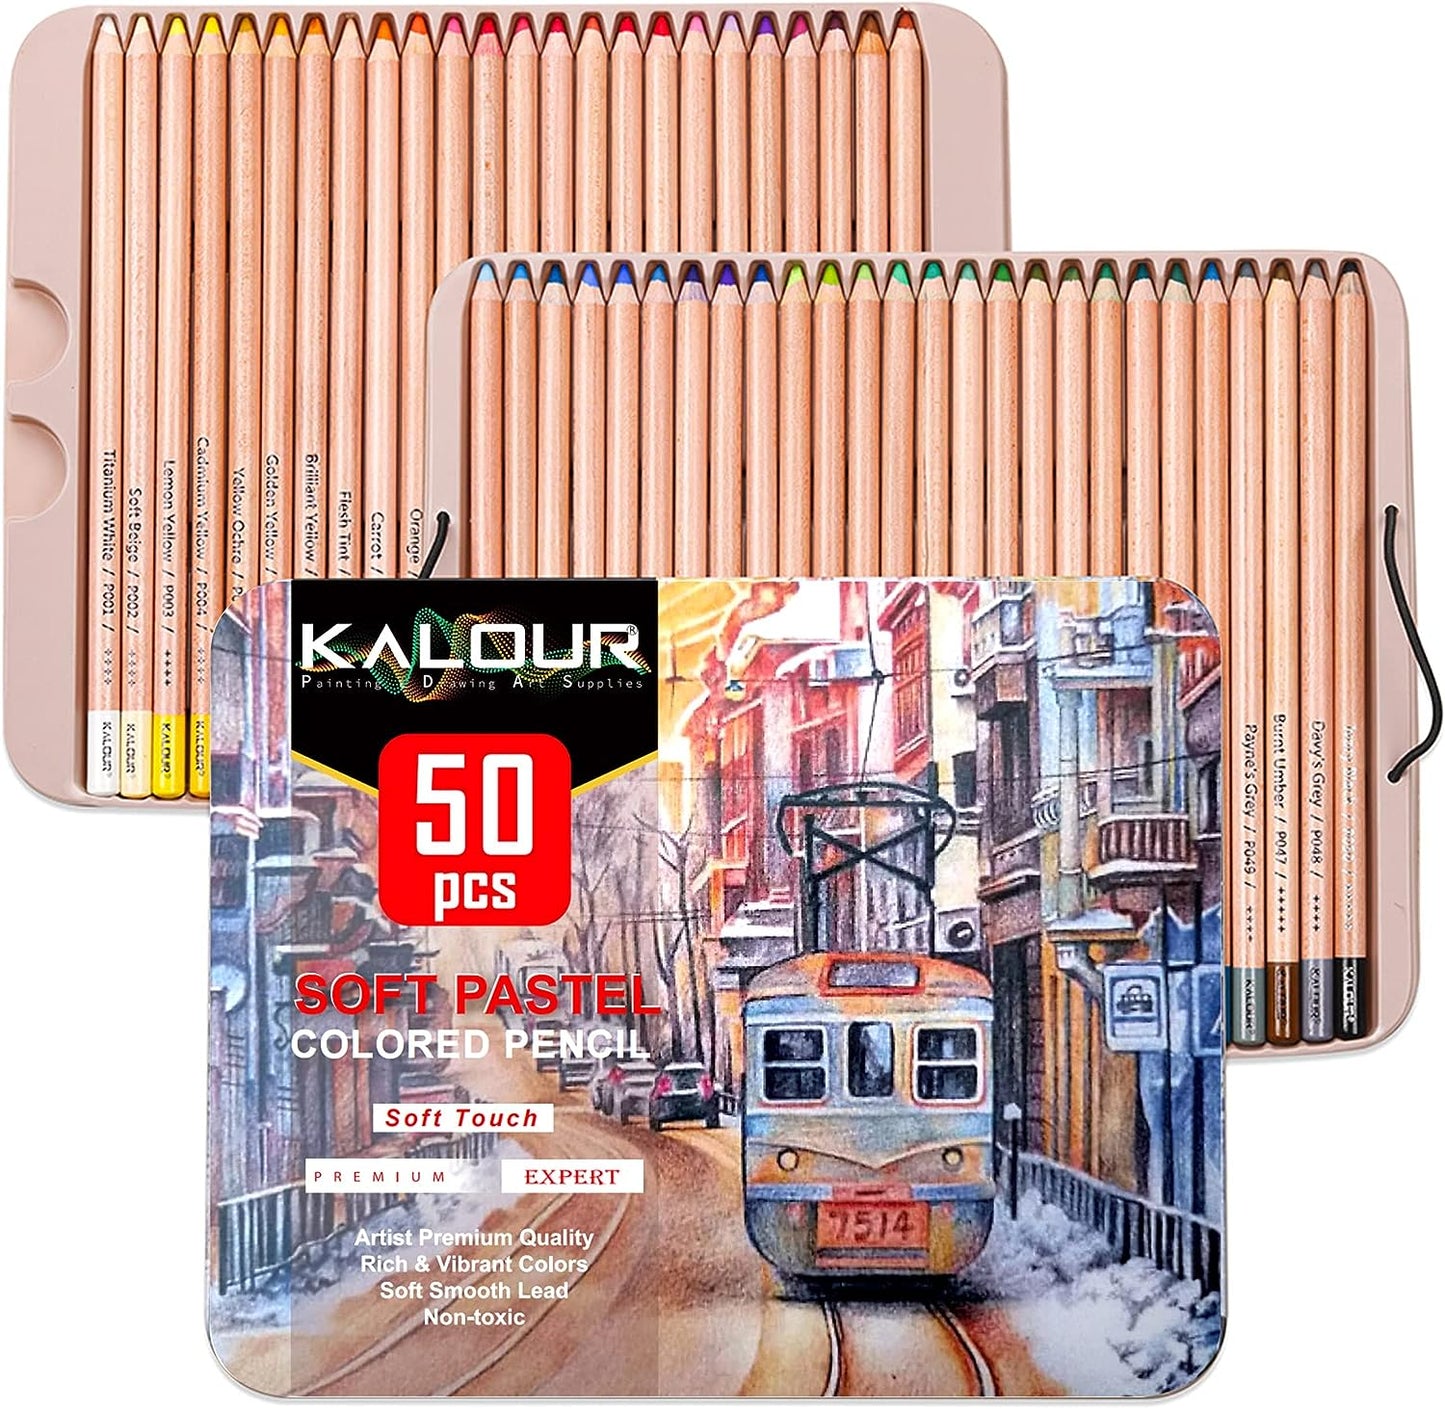 KALOUR 50pcs Pack Drawing Set Sketch Kit, Sketching Supplies with